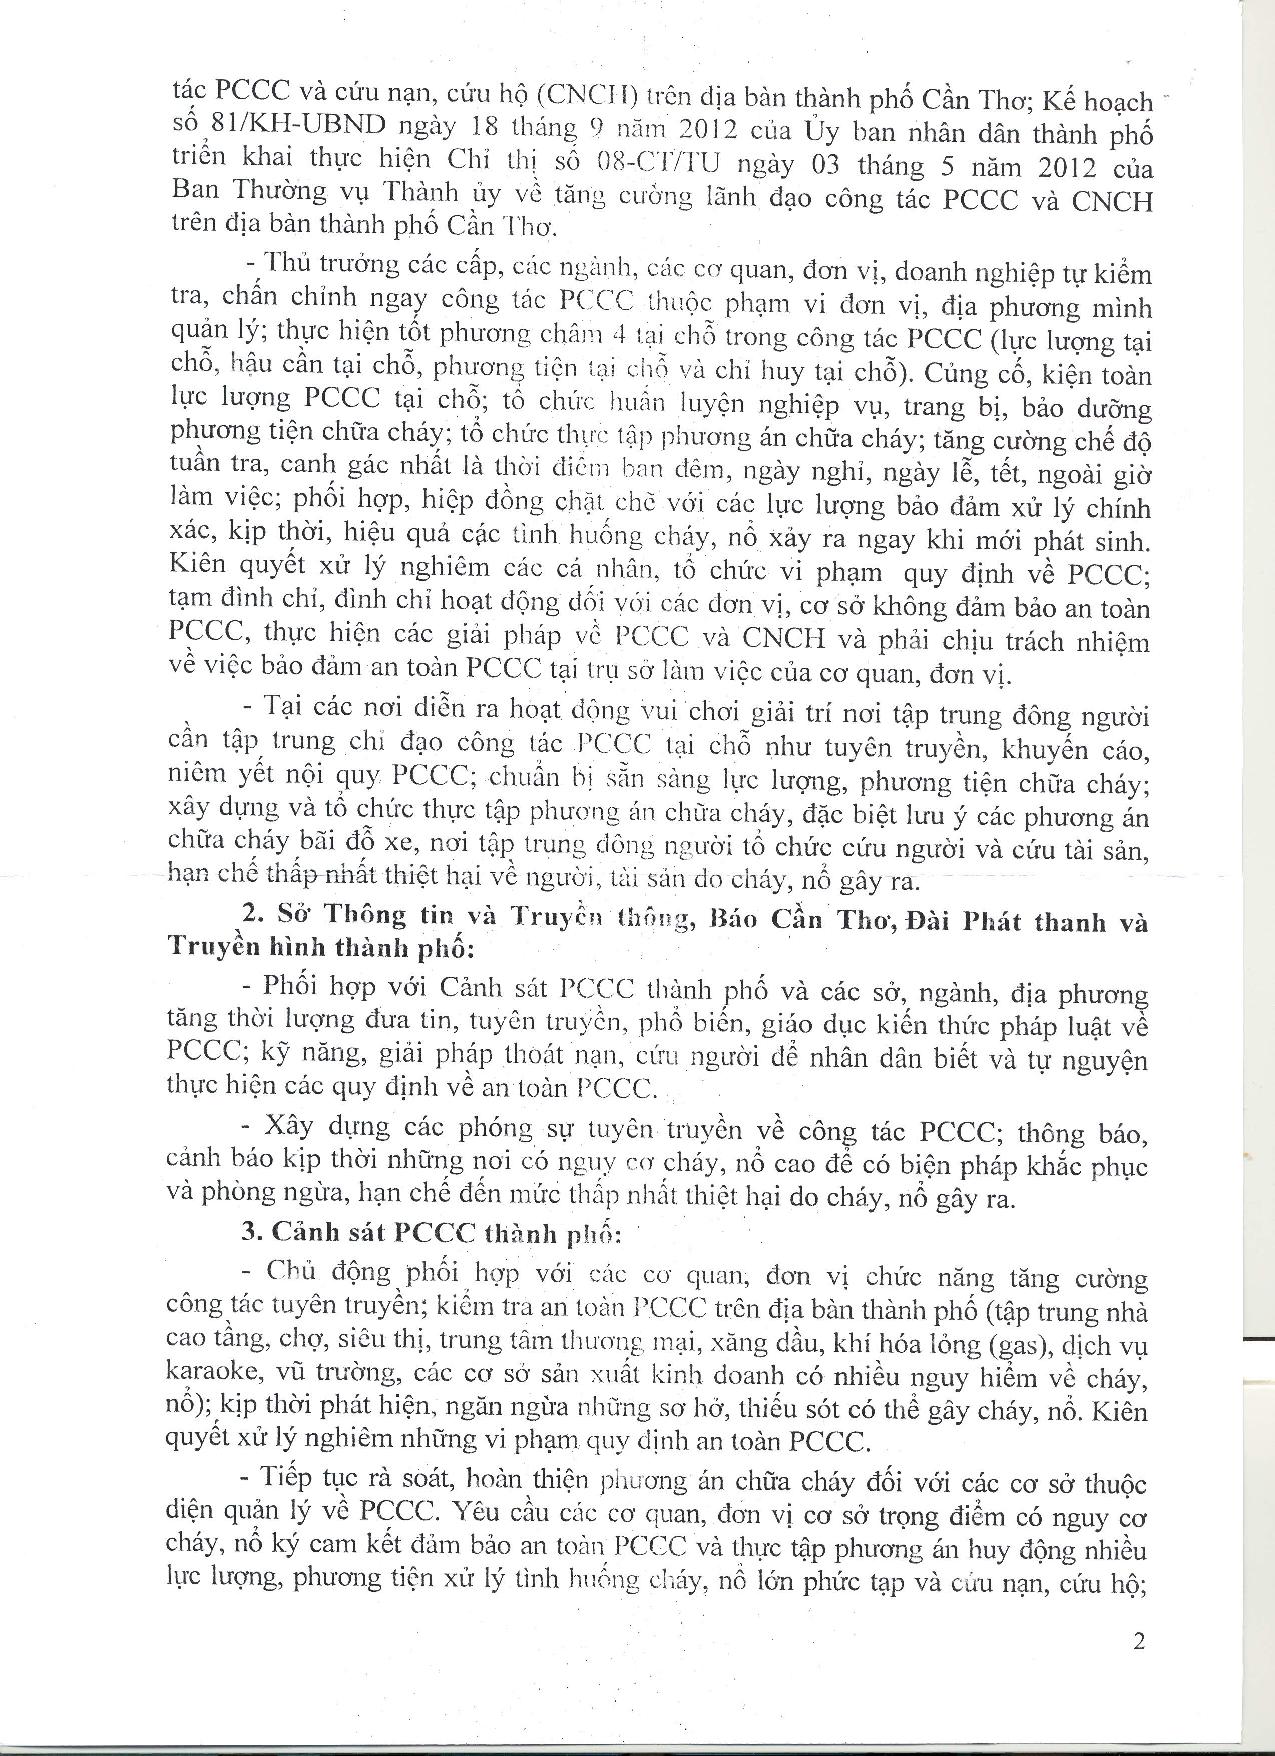 Tin 34-Tang cuong cong tac PCCC-page-002.jpg